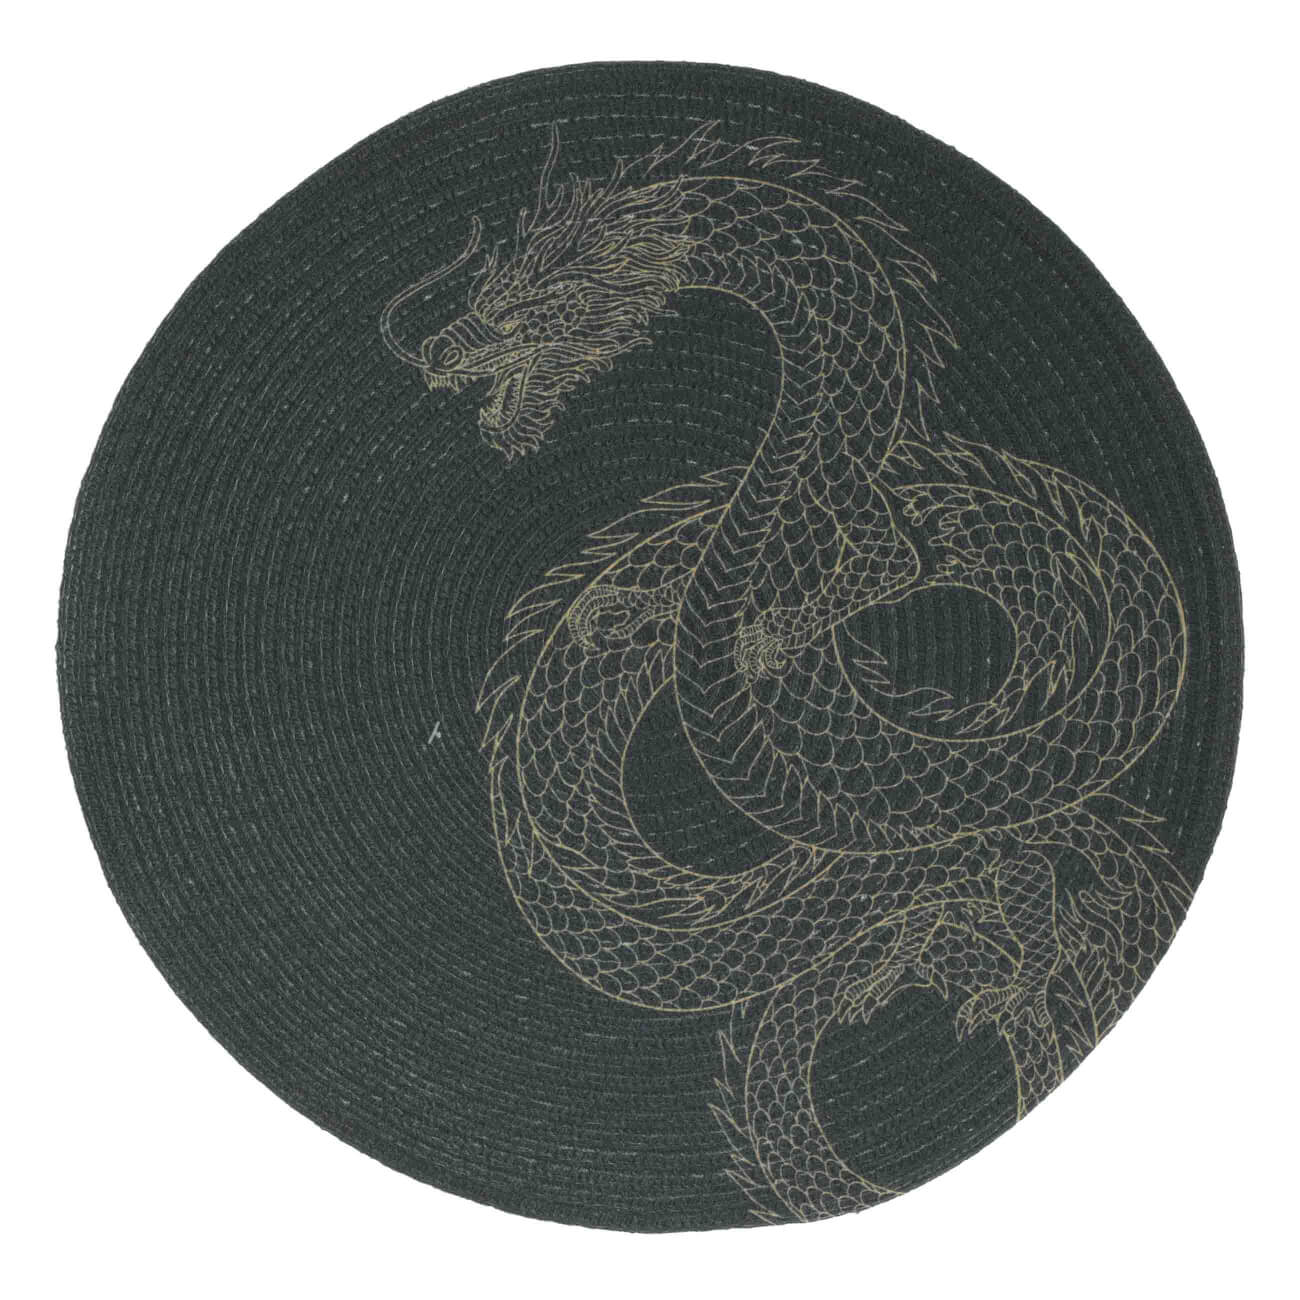 Салфетка под приборы, 38 см, полиэстер, круглая, черная, Дракон, Rotary print